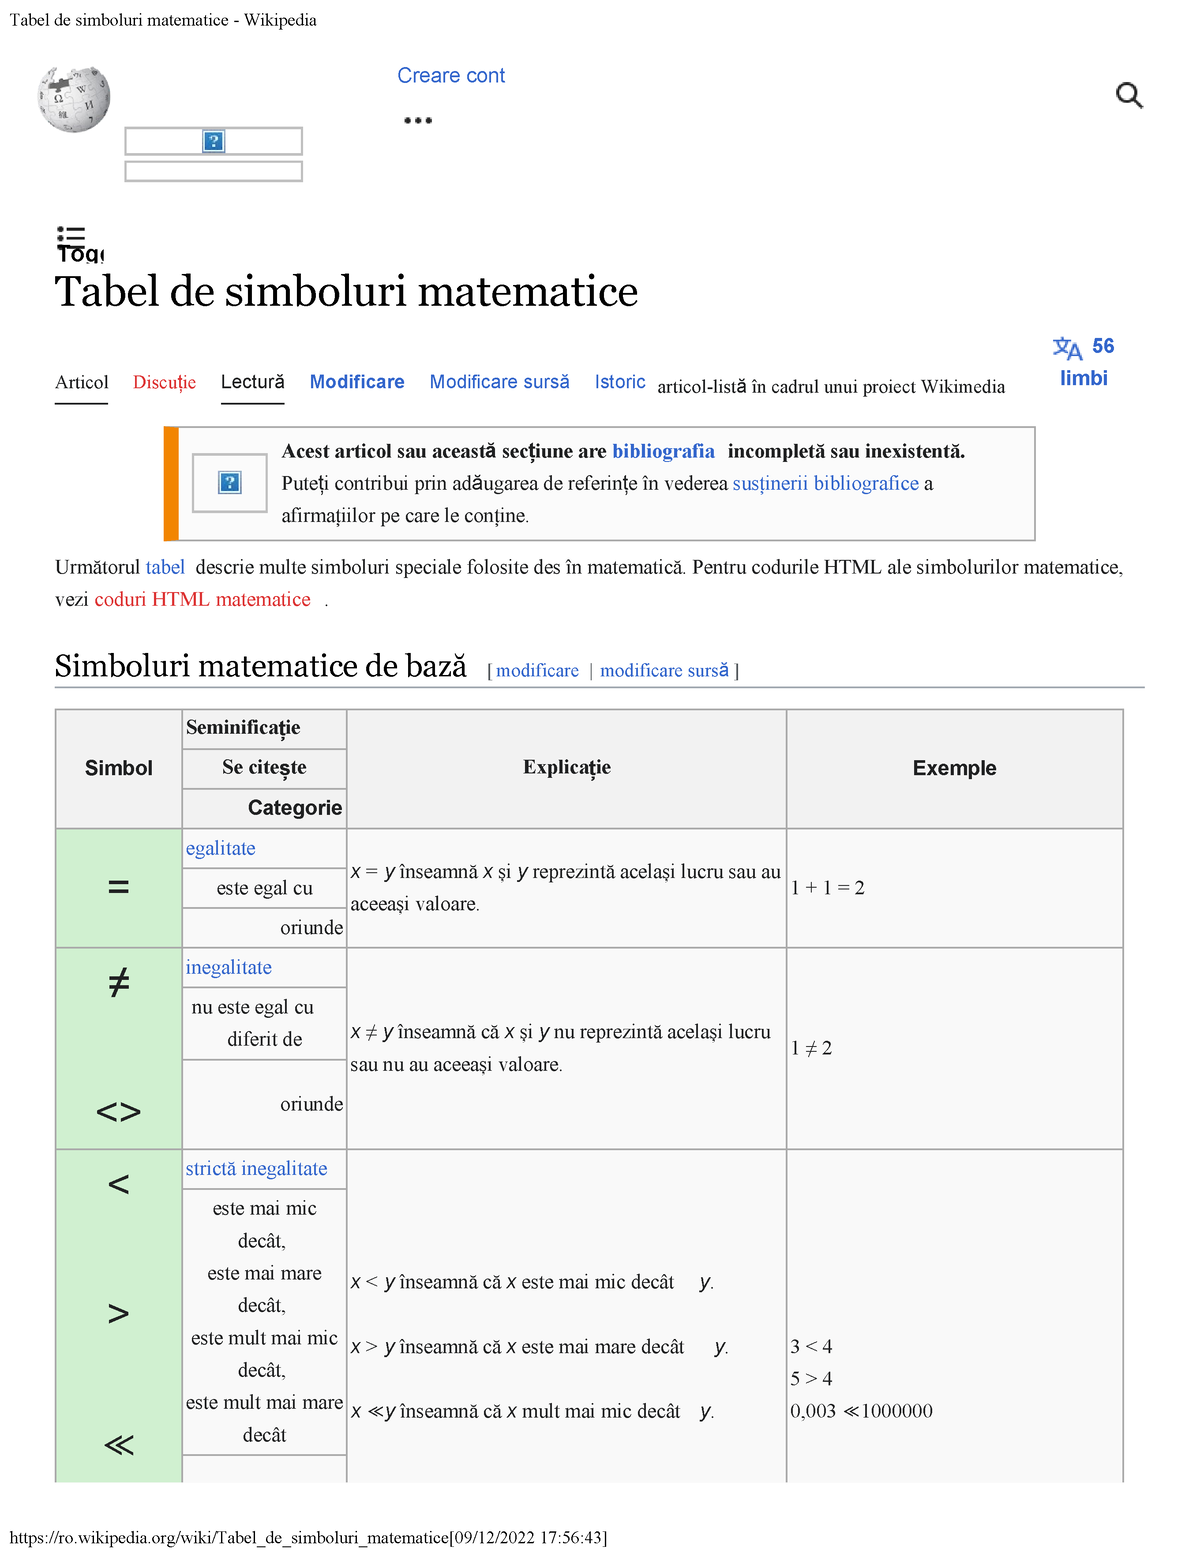 Tabel de simboluri matematice - Wikipedia - Tabel de matematice ####### 56 Articol Studocu